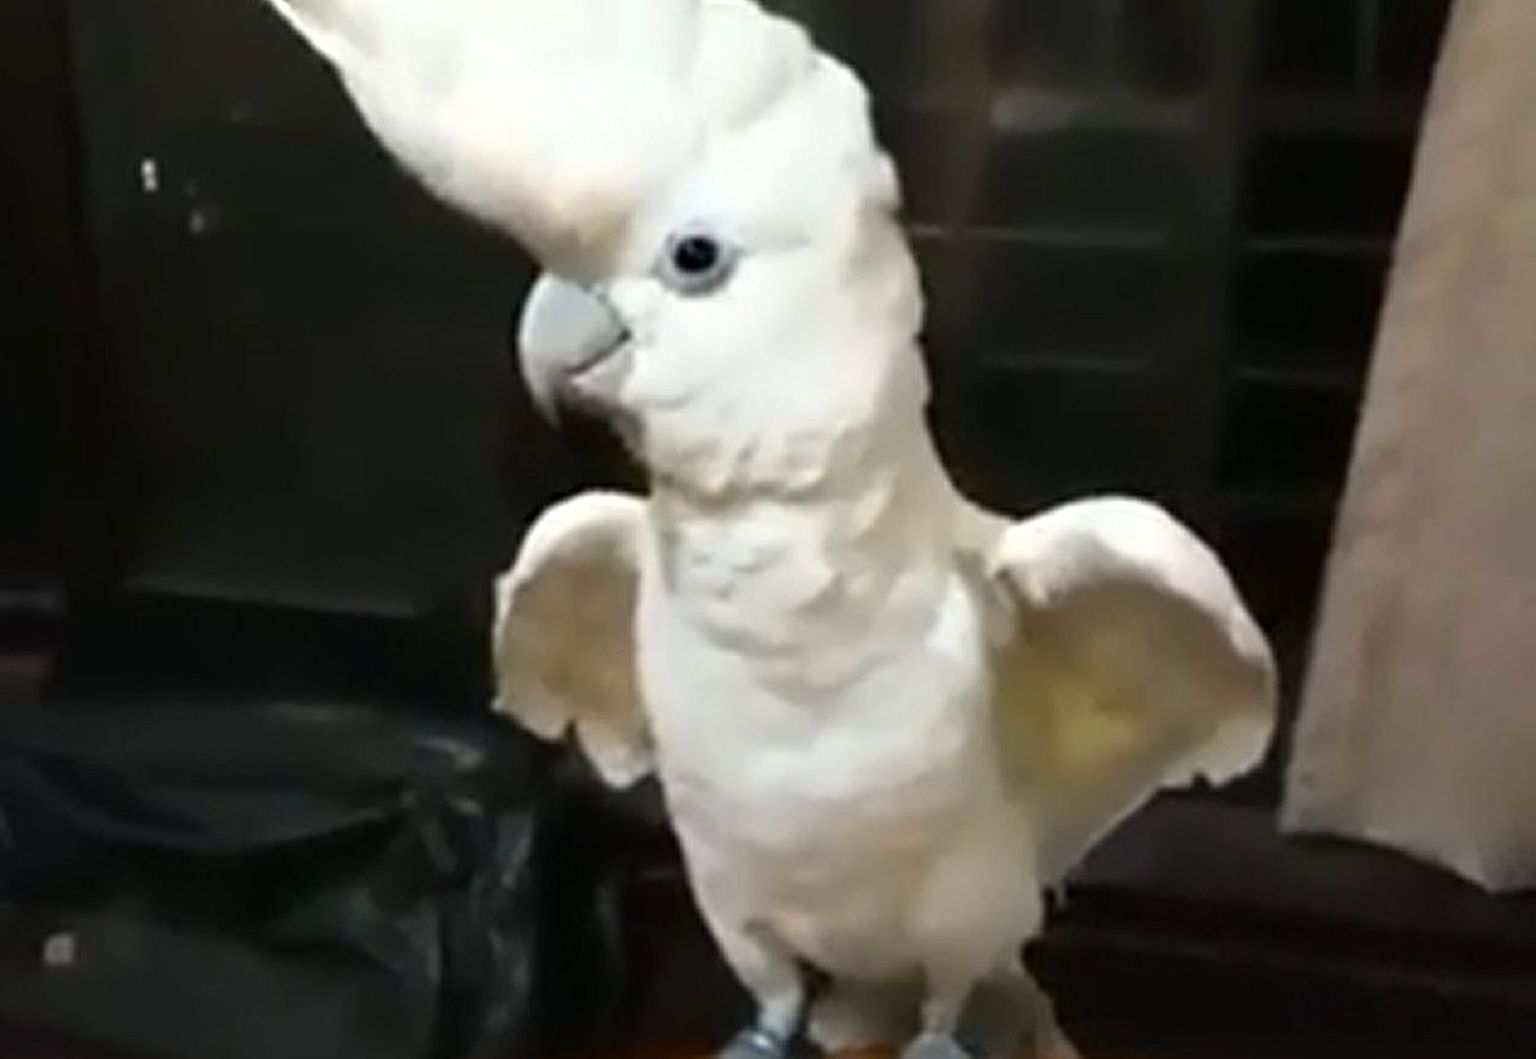 Papagoi